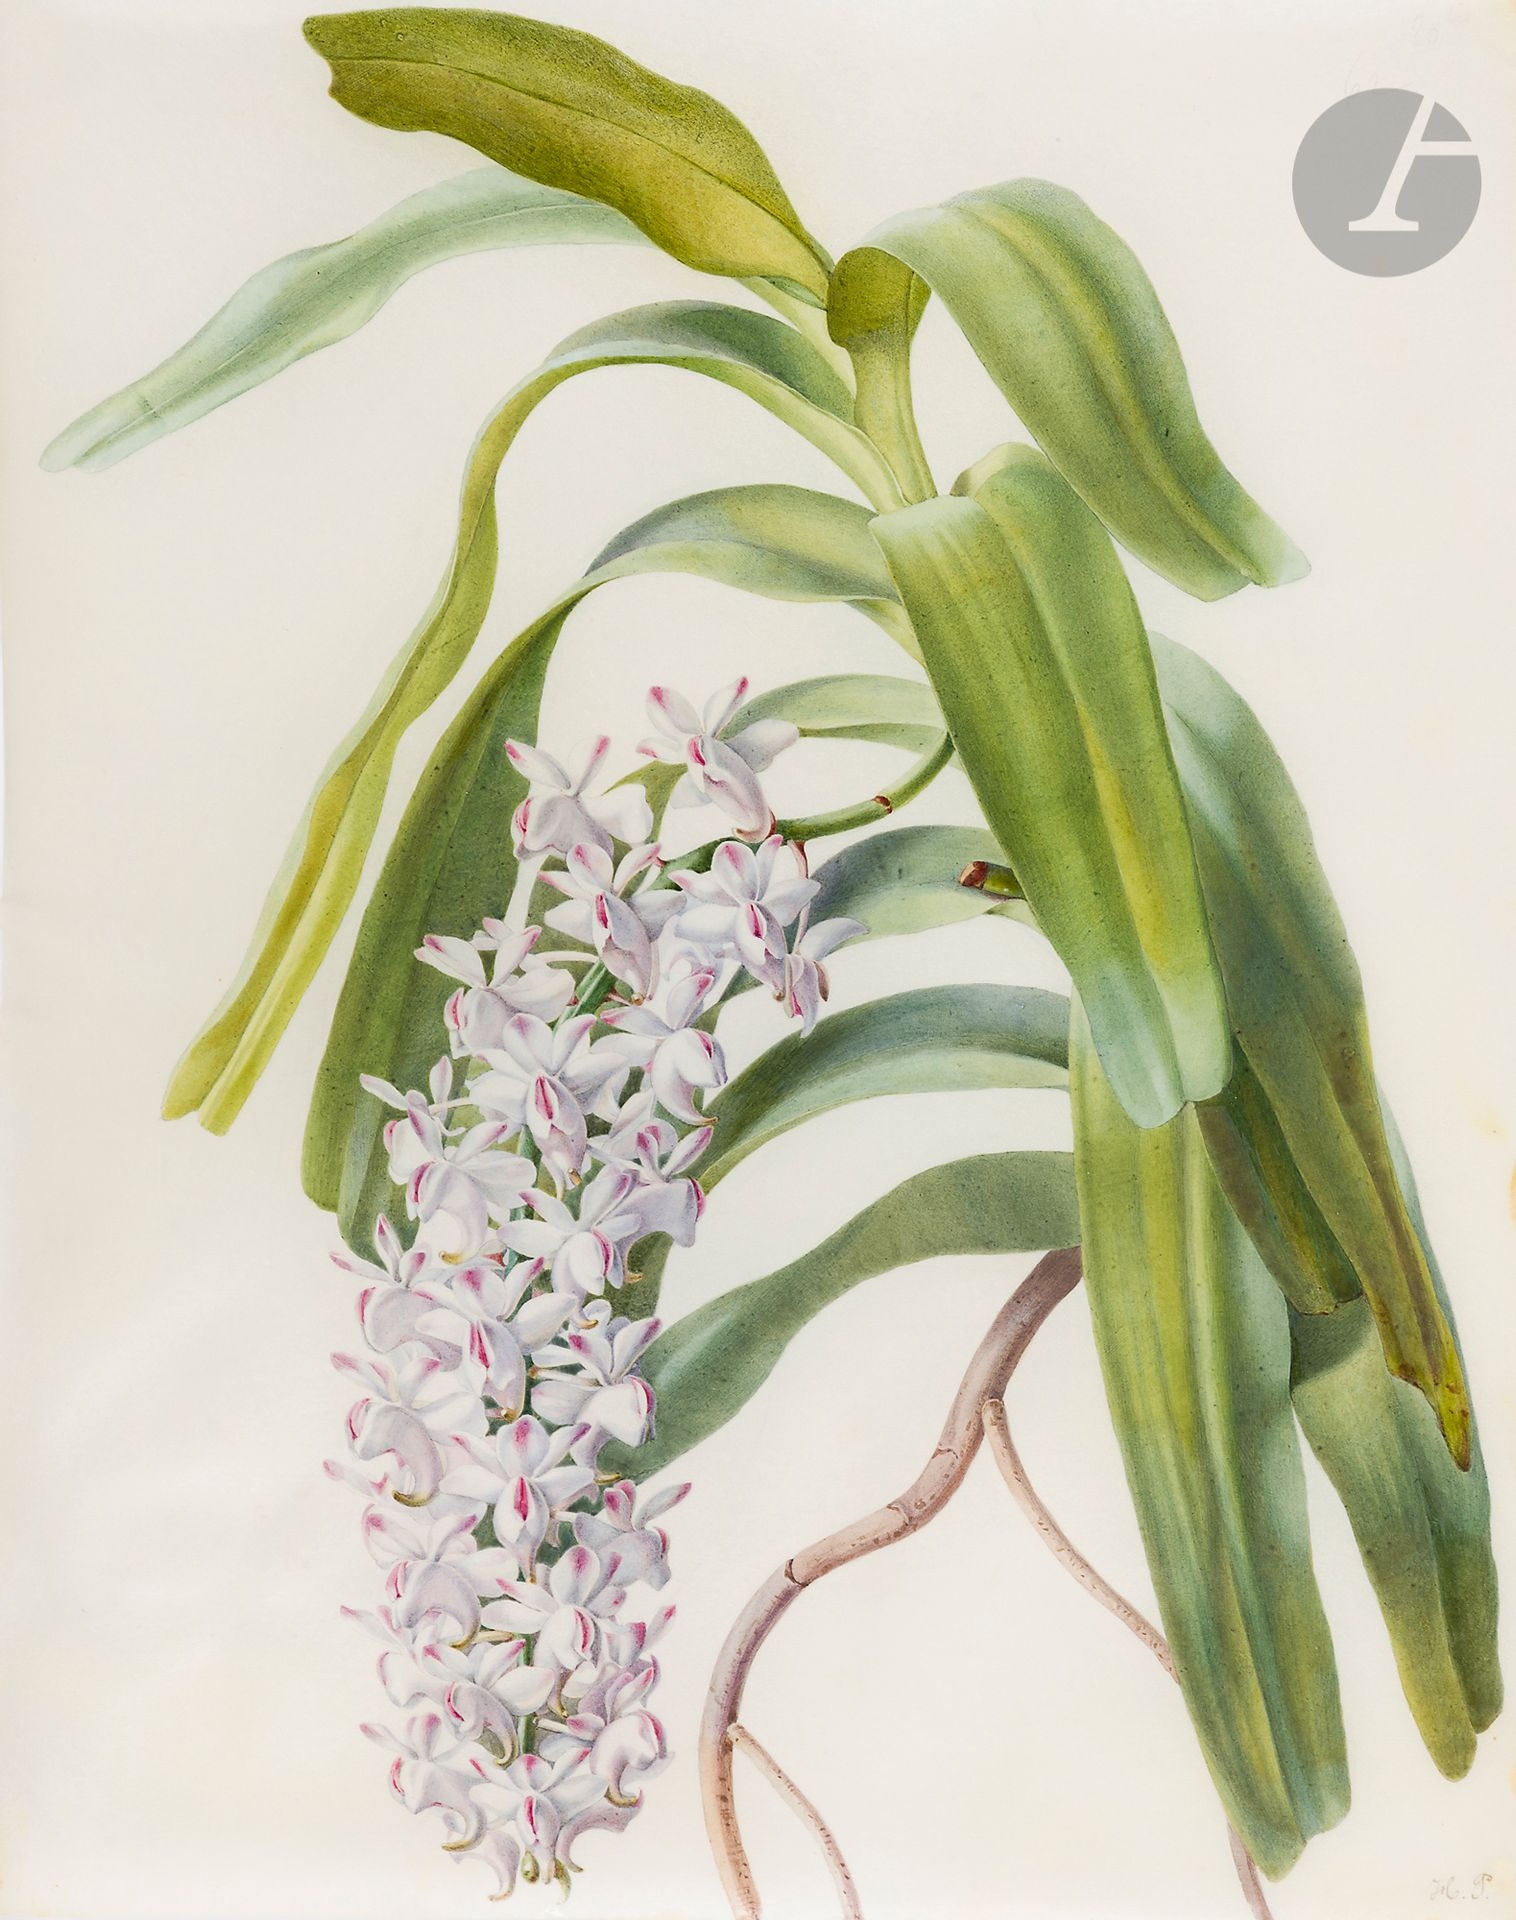 Étude d’orchidée (Rhynchostylis gigantea) by Henriette Paravey